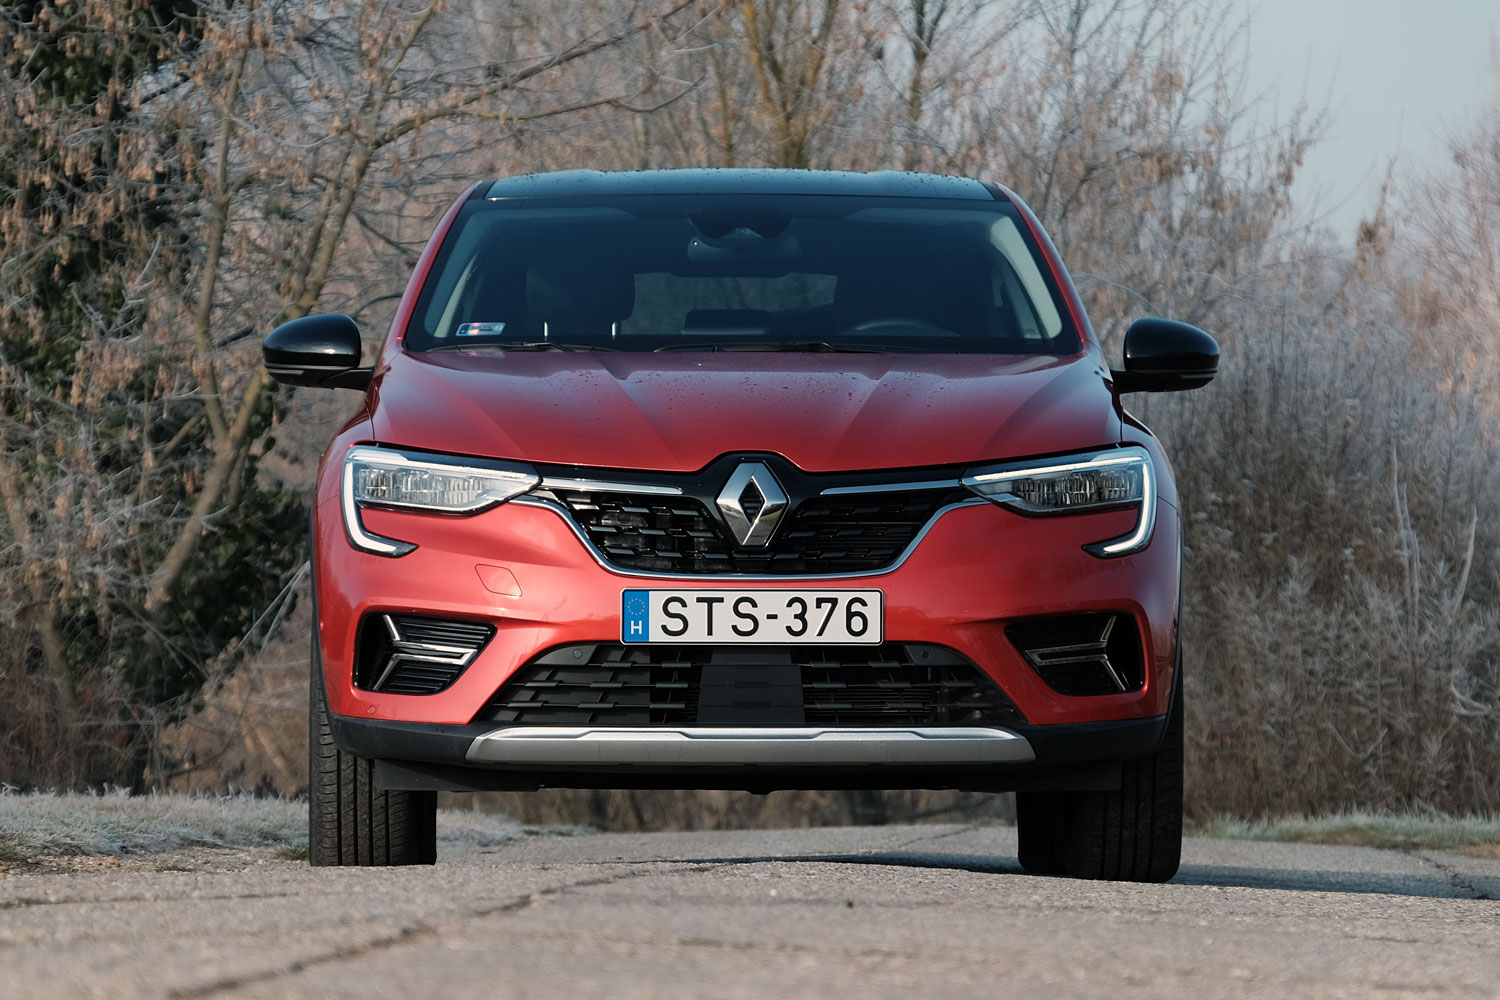 Terepkupé féláron, hibrid hajtással – Renault Arkana teszt 5